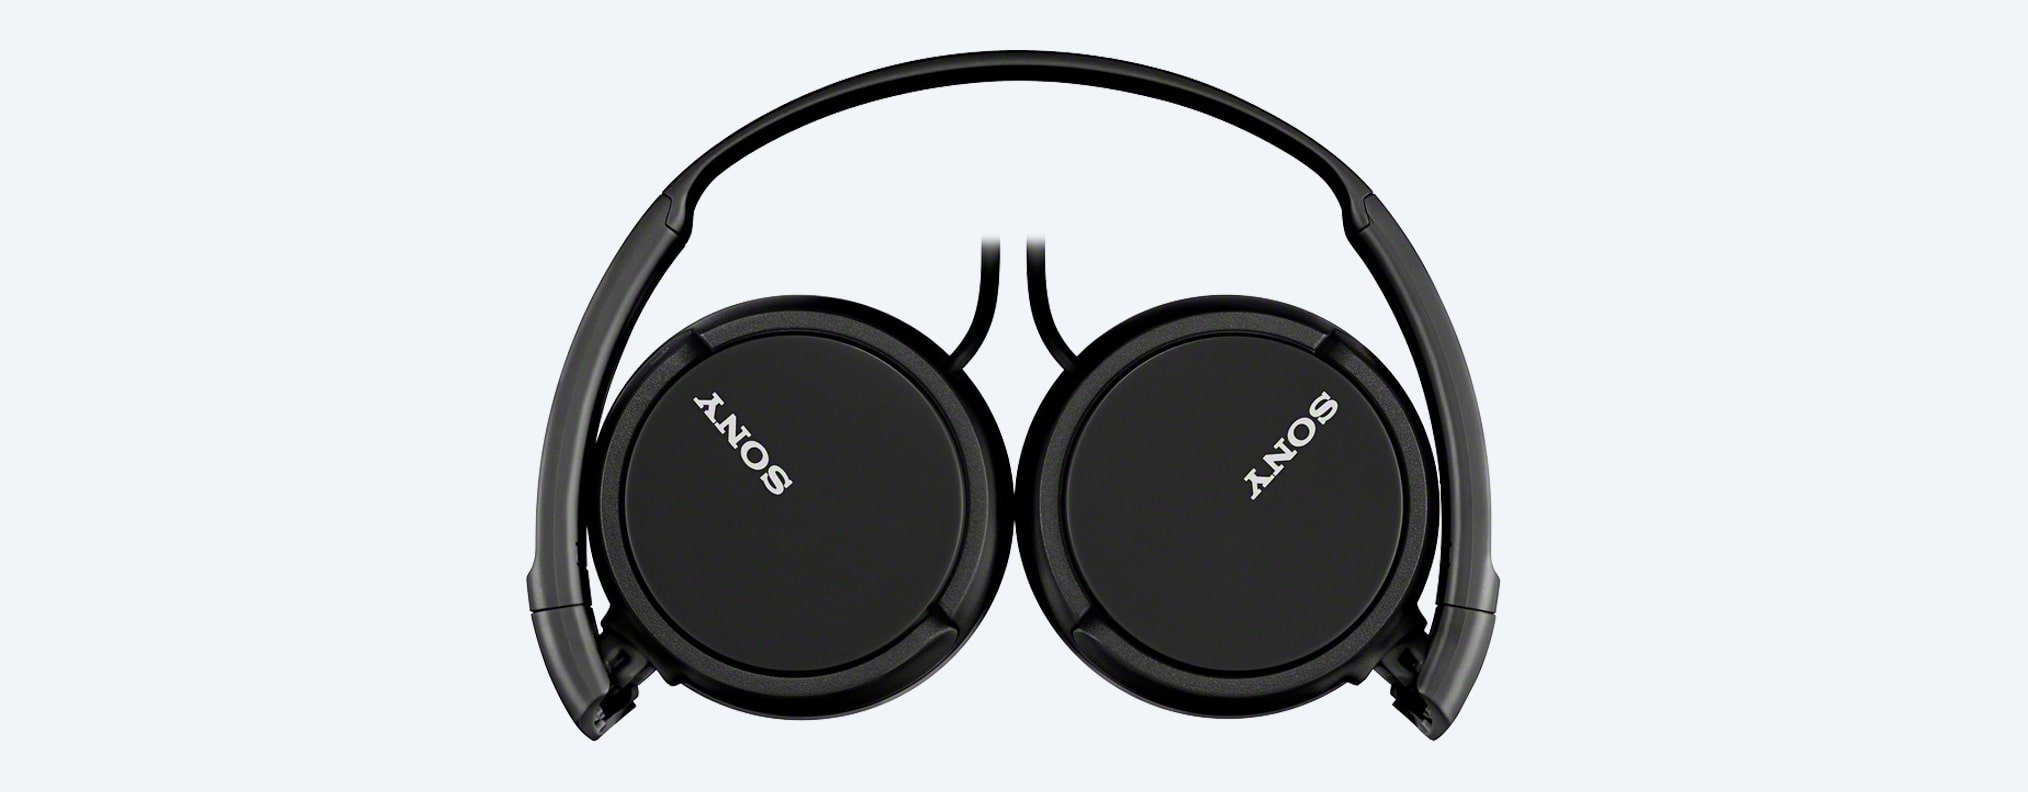 Słuchawki Sony nauszne MDR-ZX110AP czarne widok na złożone słuchawki od góry